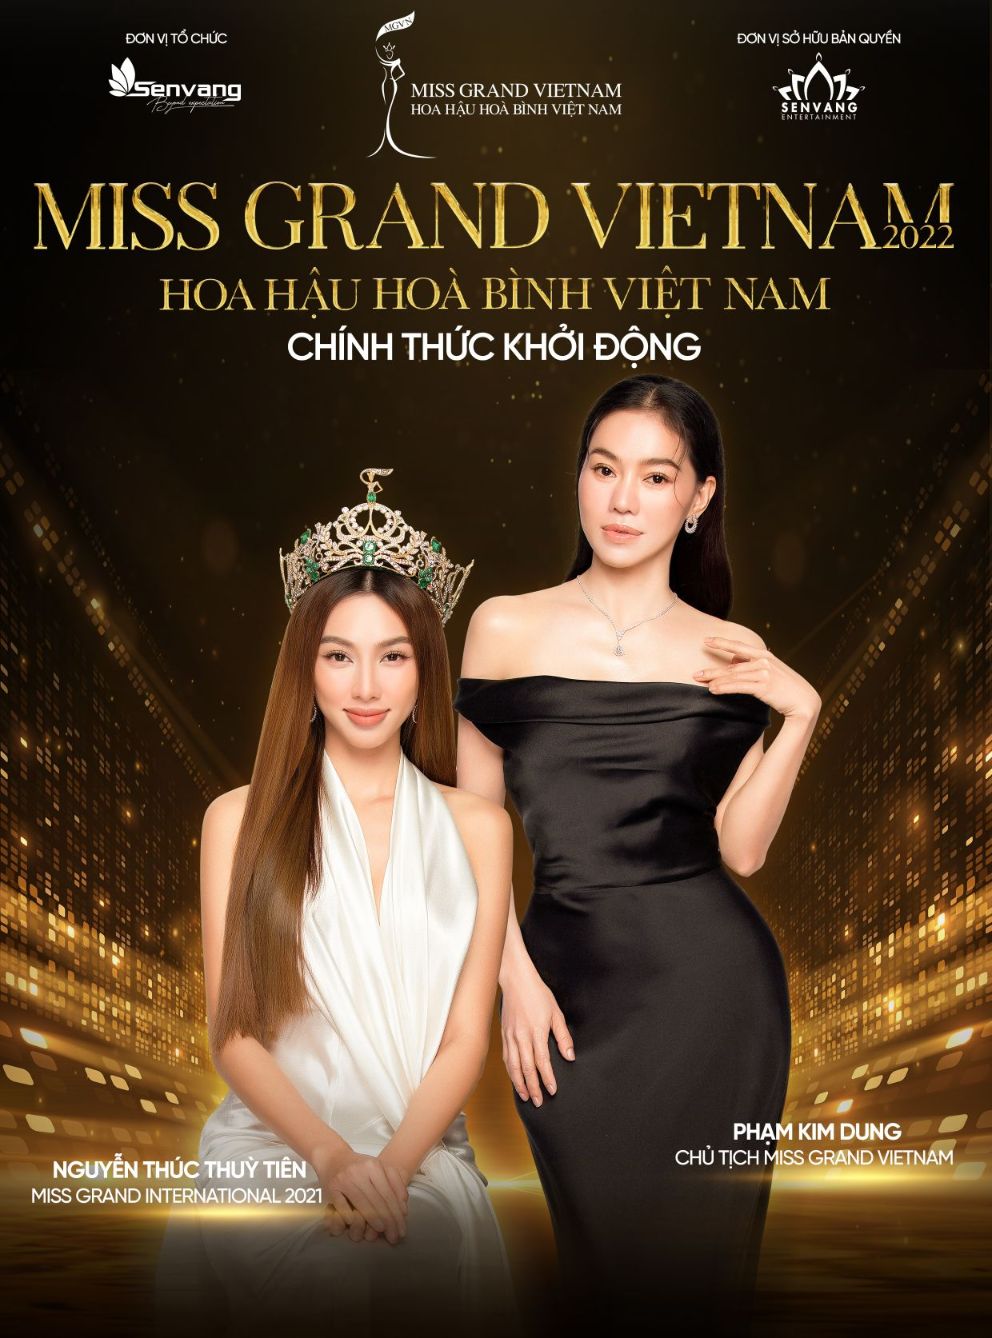 Post MGVN Miss Grand Vietnam 2022 khởi động, tìm kiếm người kế nhiệm Nguyễn Thúc Thùy Tiên